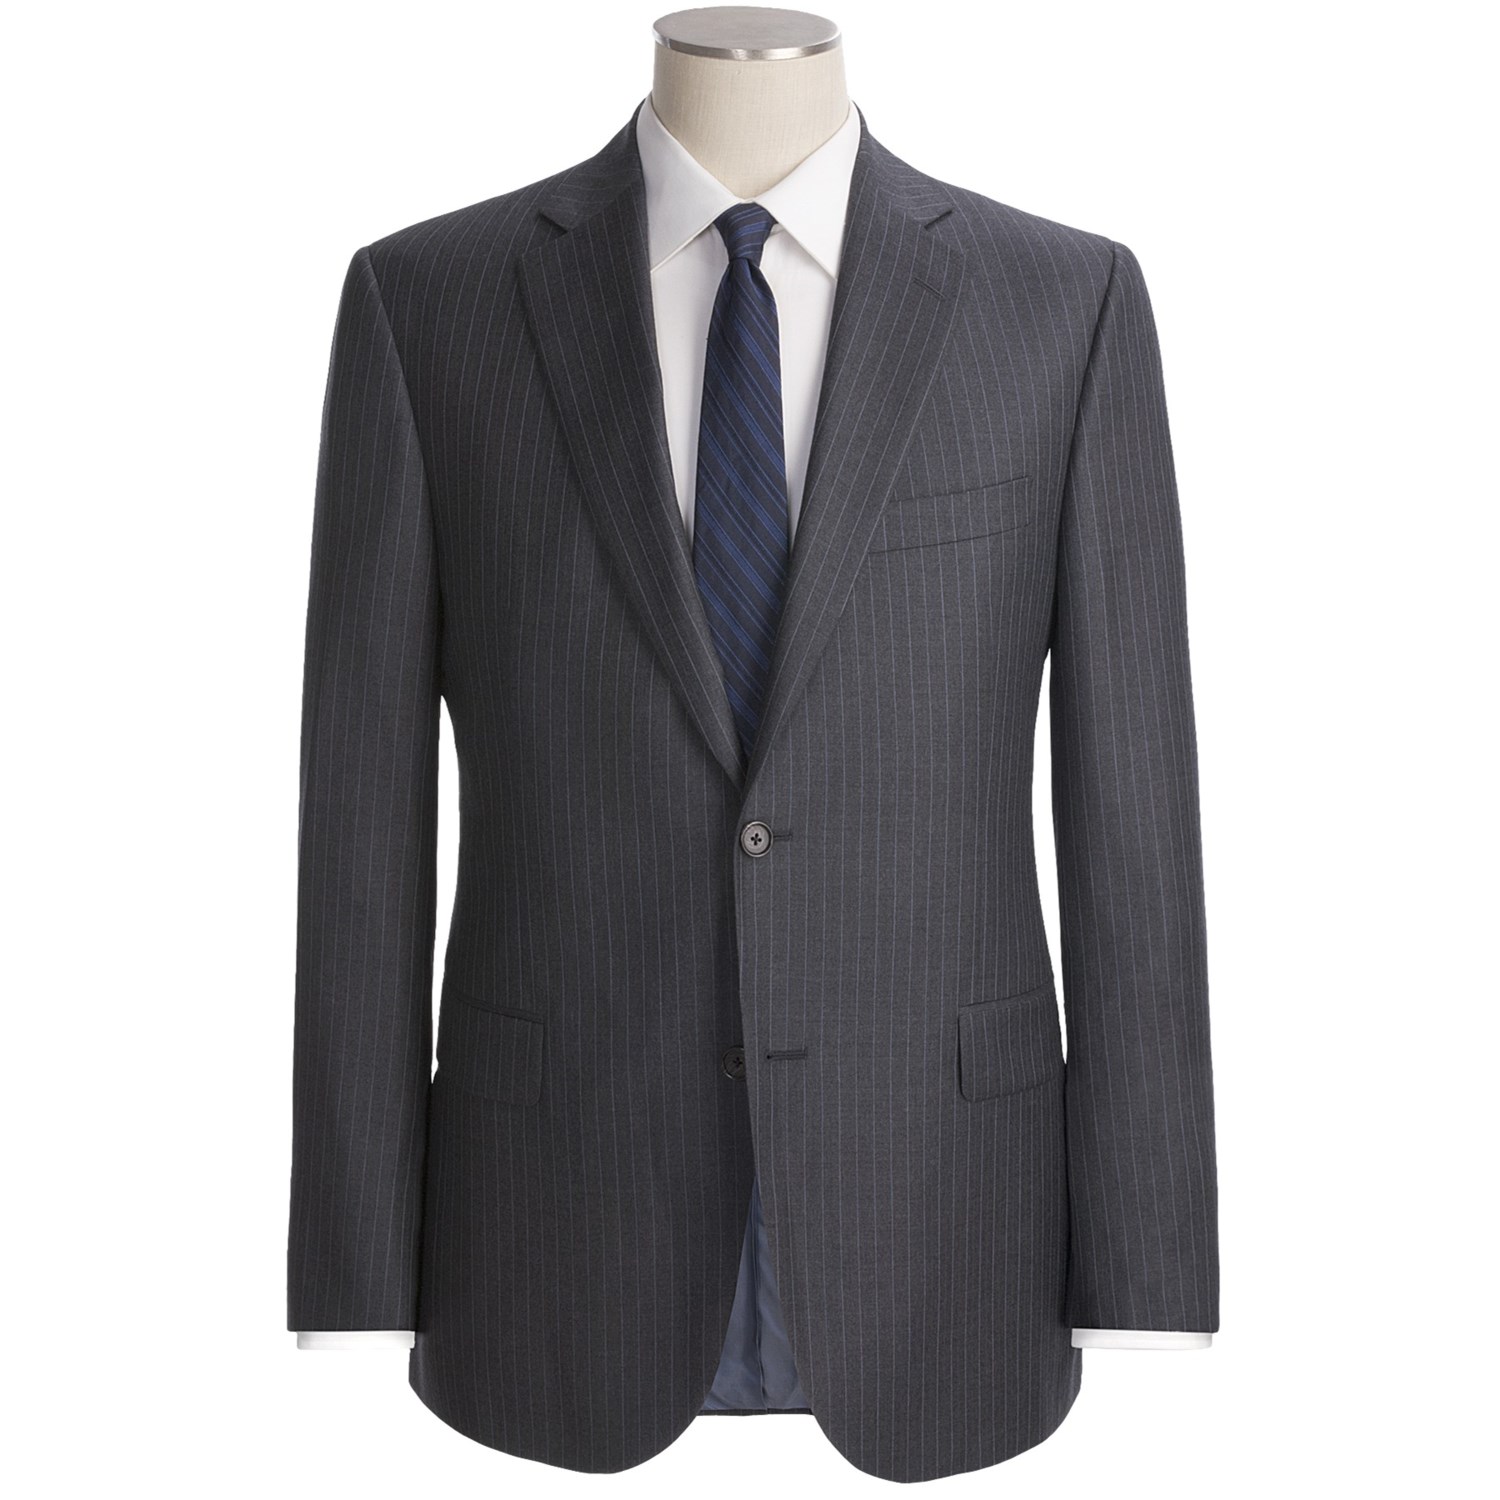 business suit clipart - photo #48